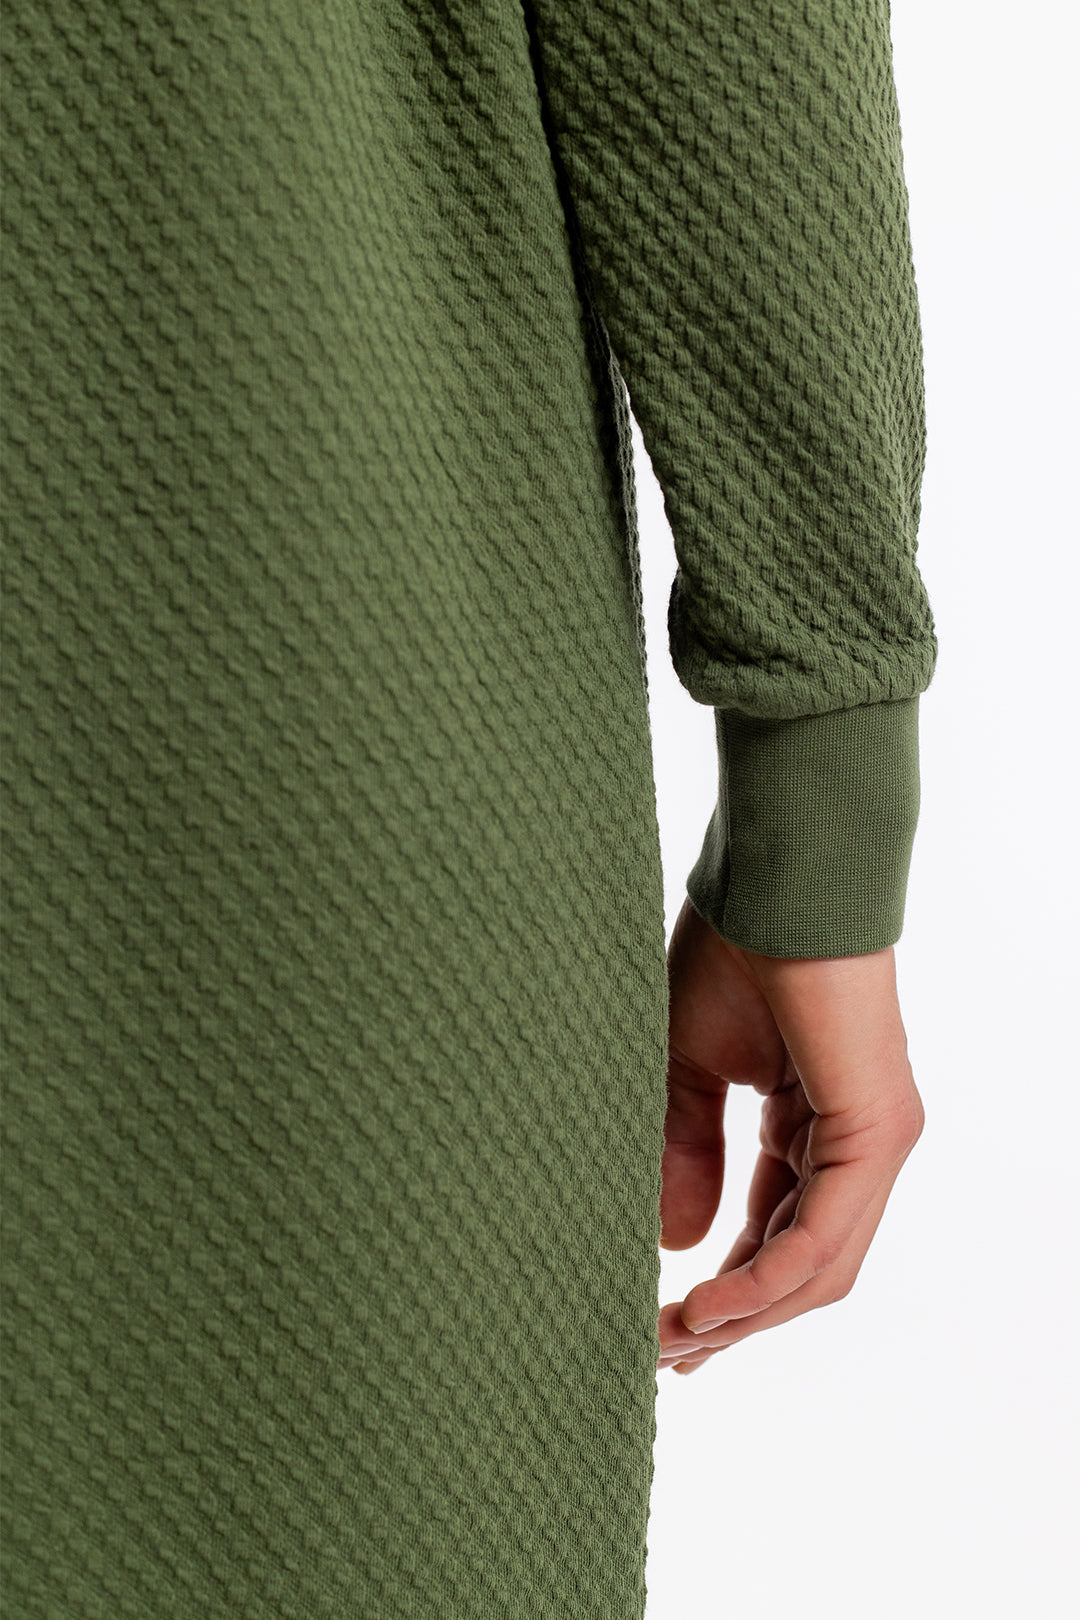 Robe sweat-shirt verte en coton 100% biologique de Rotholz